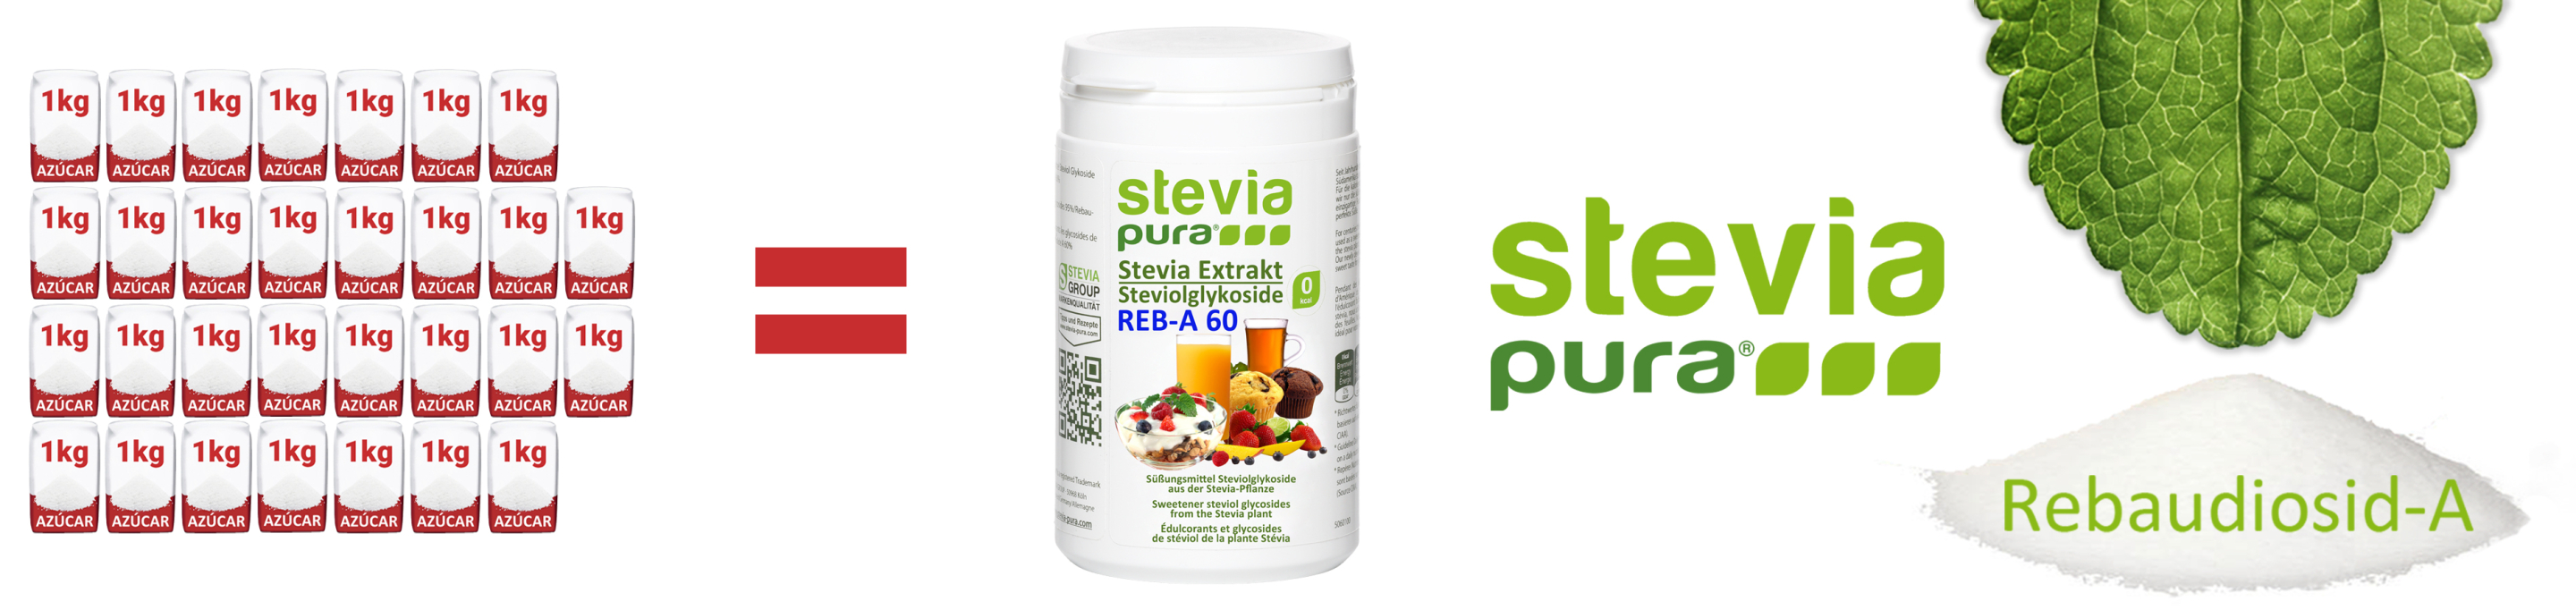 Stevia pura en polvo Rebaudioside-A 60% Extracto puro de...